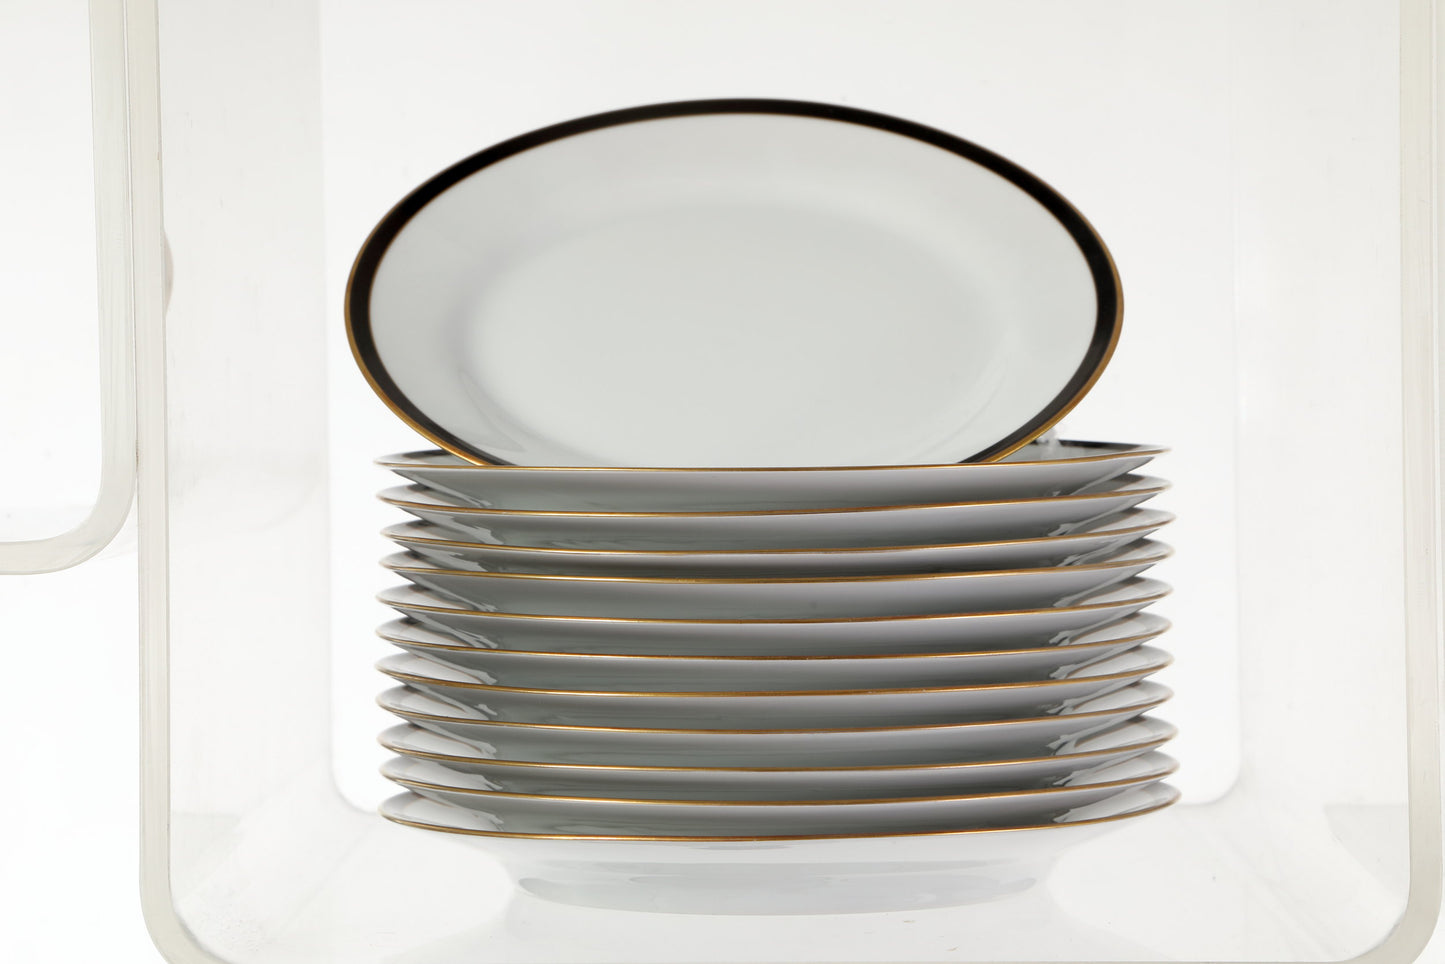 ALT tirschenreuth 1838 germany porcelain dinner service with black and gold border